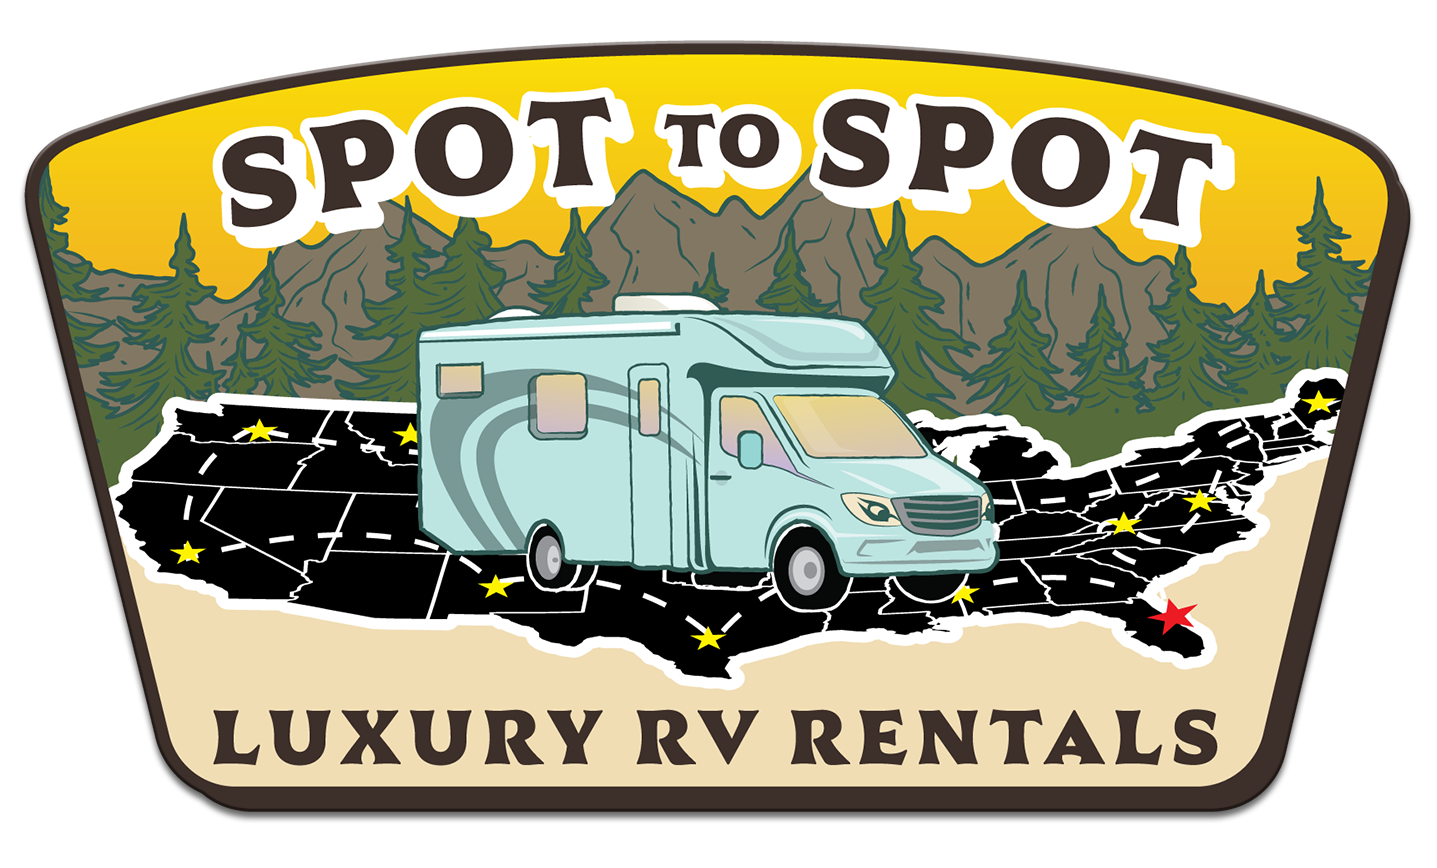 Spot To Spot RV Rentals